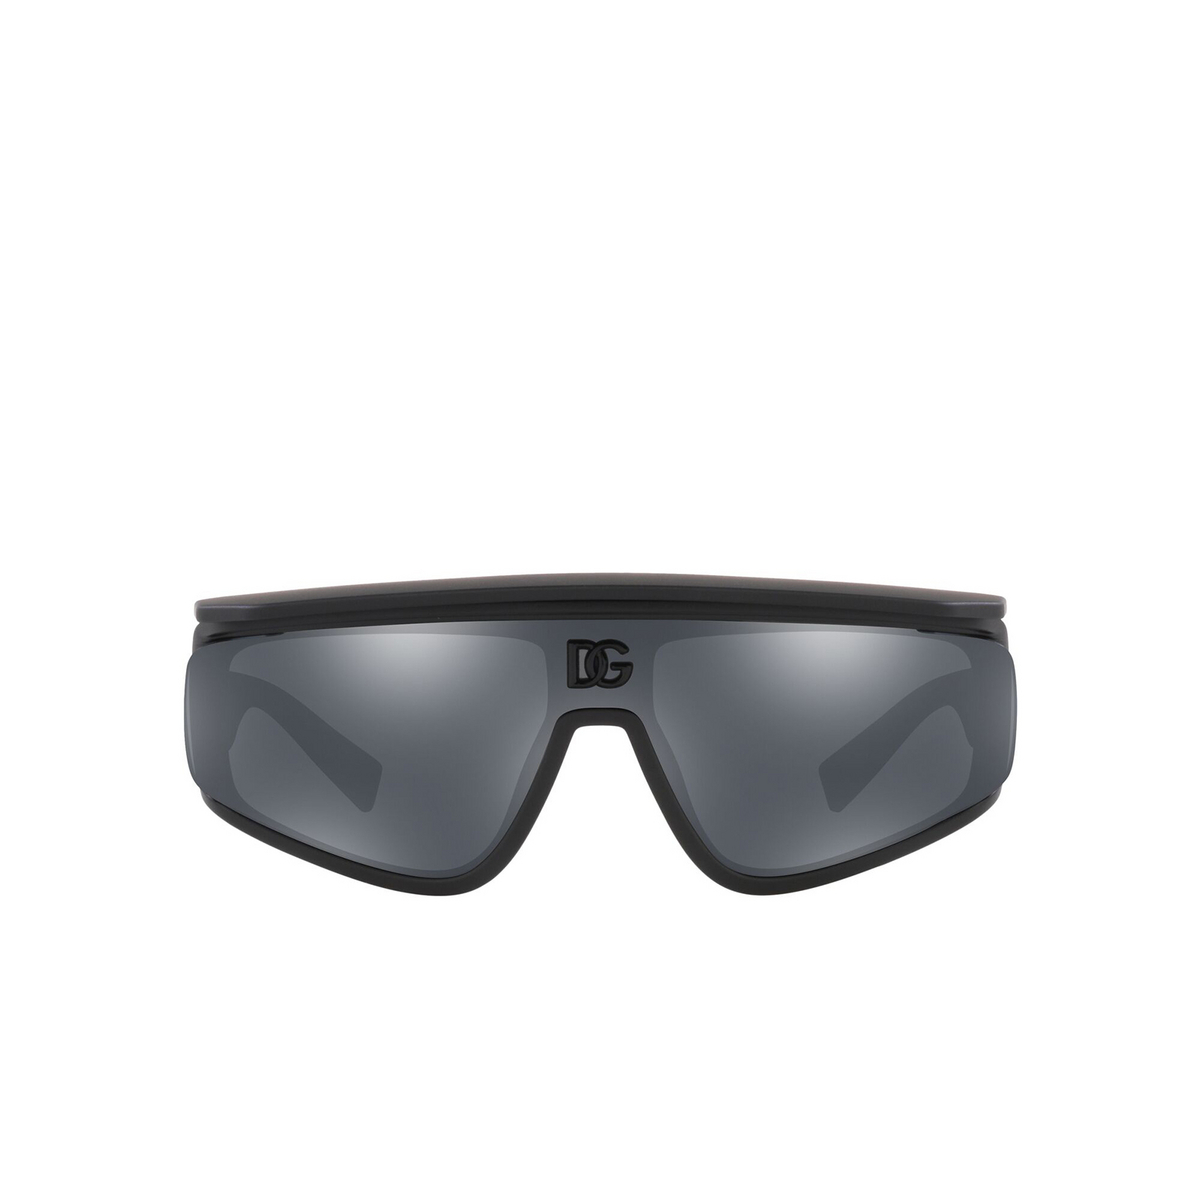 Dolce & Gabbana® Rectangle Sunglasses: DG6177 color Matte Black 25256G - front view.